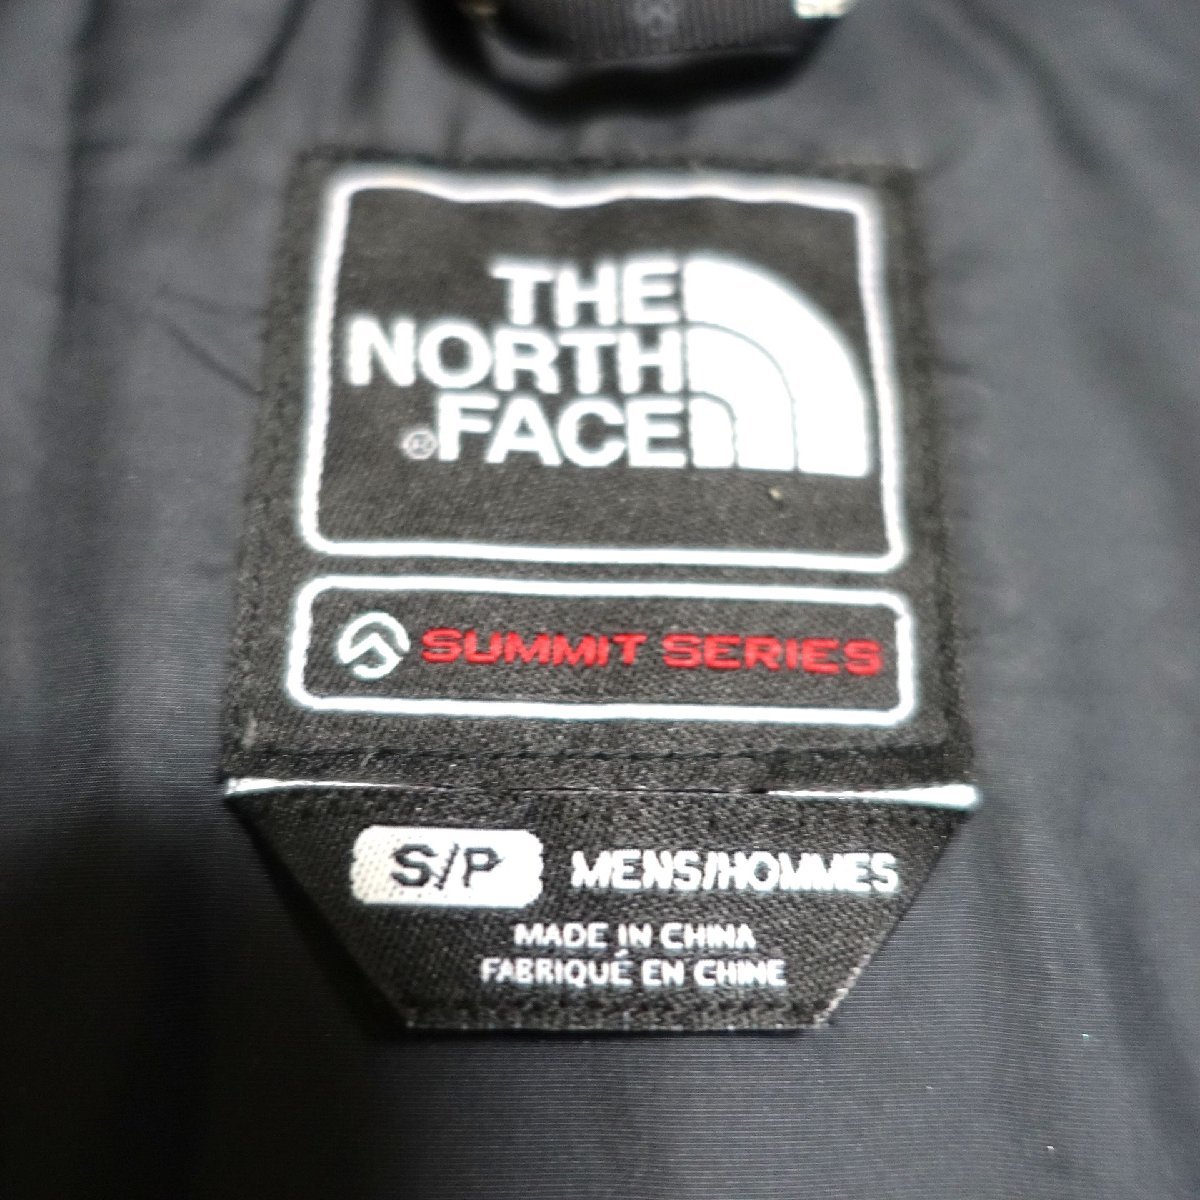 THE NORTH FACE ノースフェイス サミットシリーズ ヒマラヤンパーカ ダウンジャケット 800FP メンズ Sサイズ 正規品 グリーン Z1202_画像7